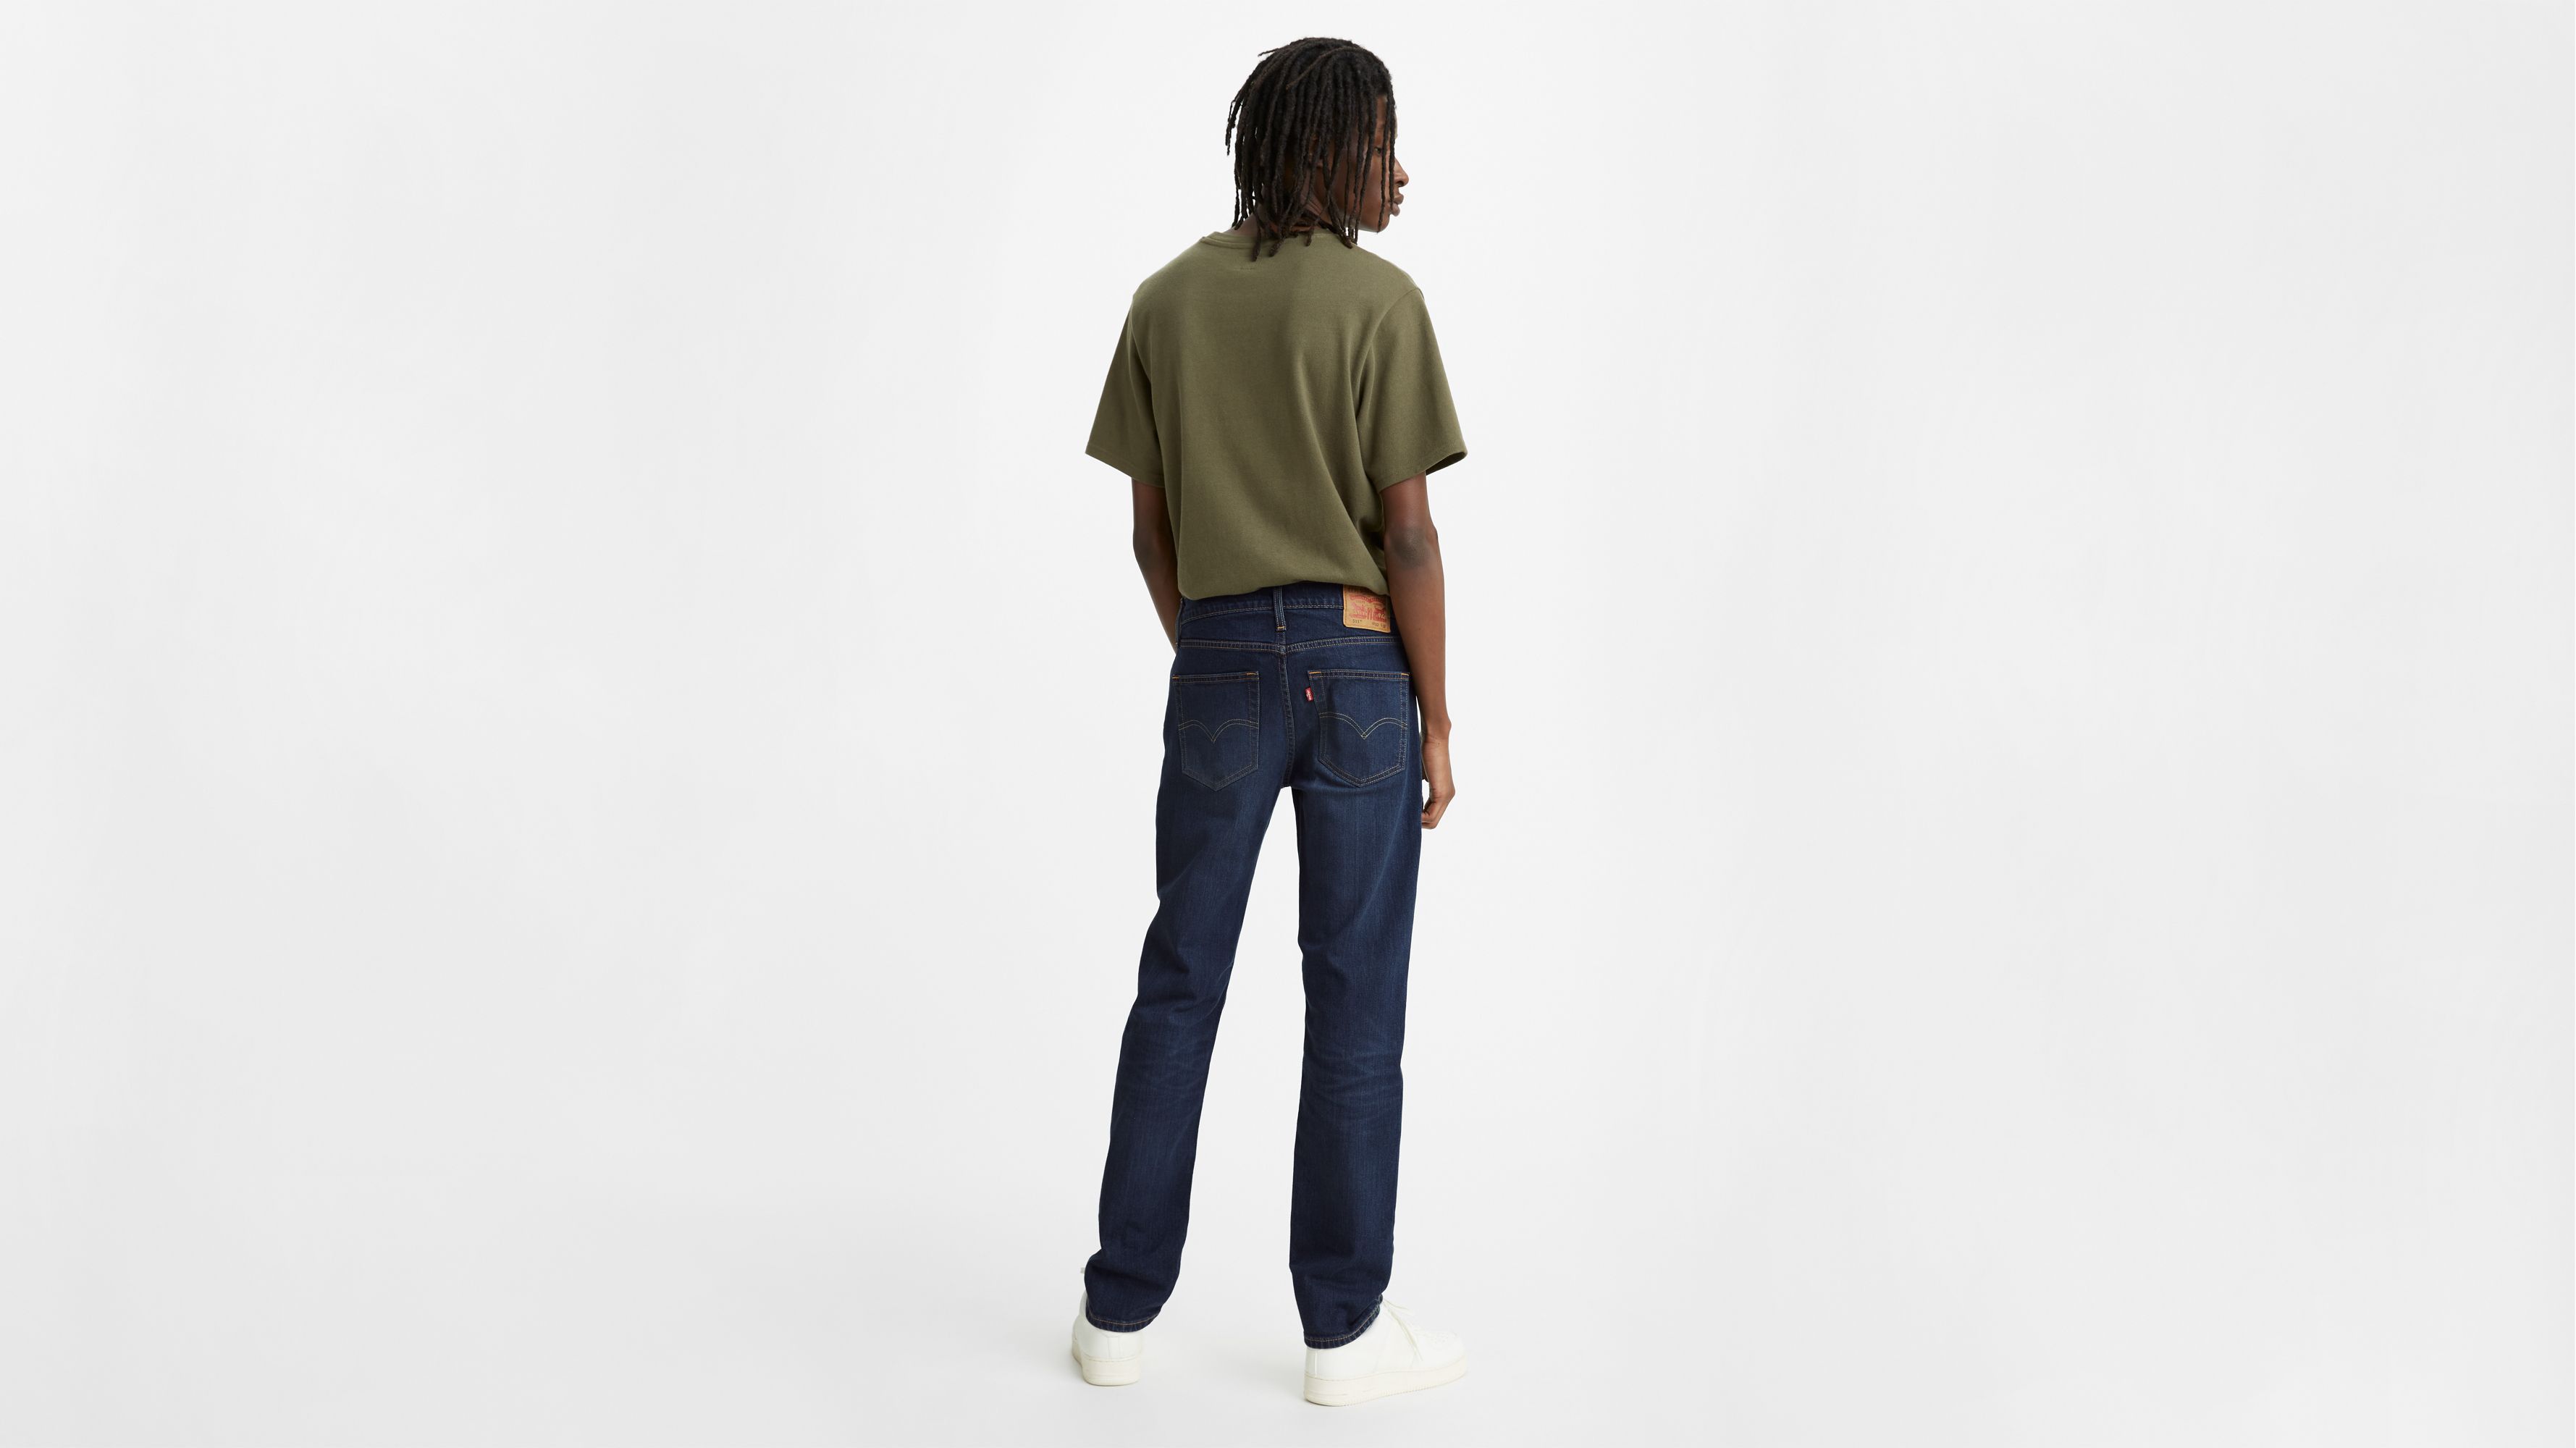 levis 531 jeans